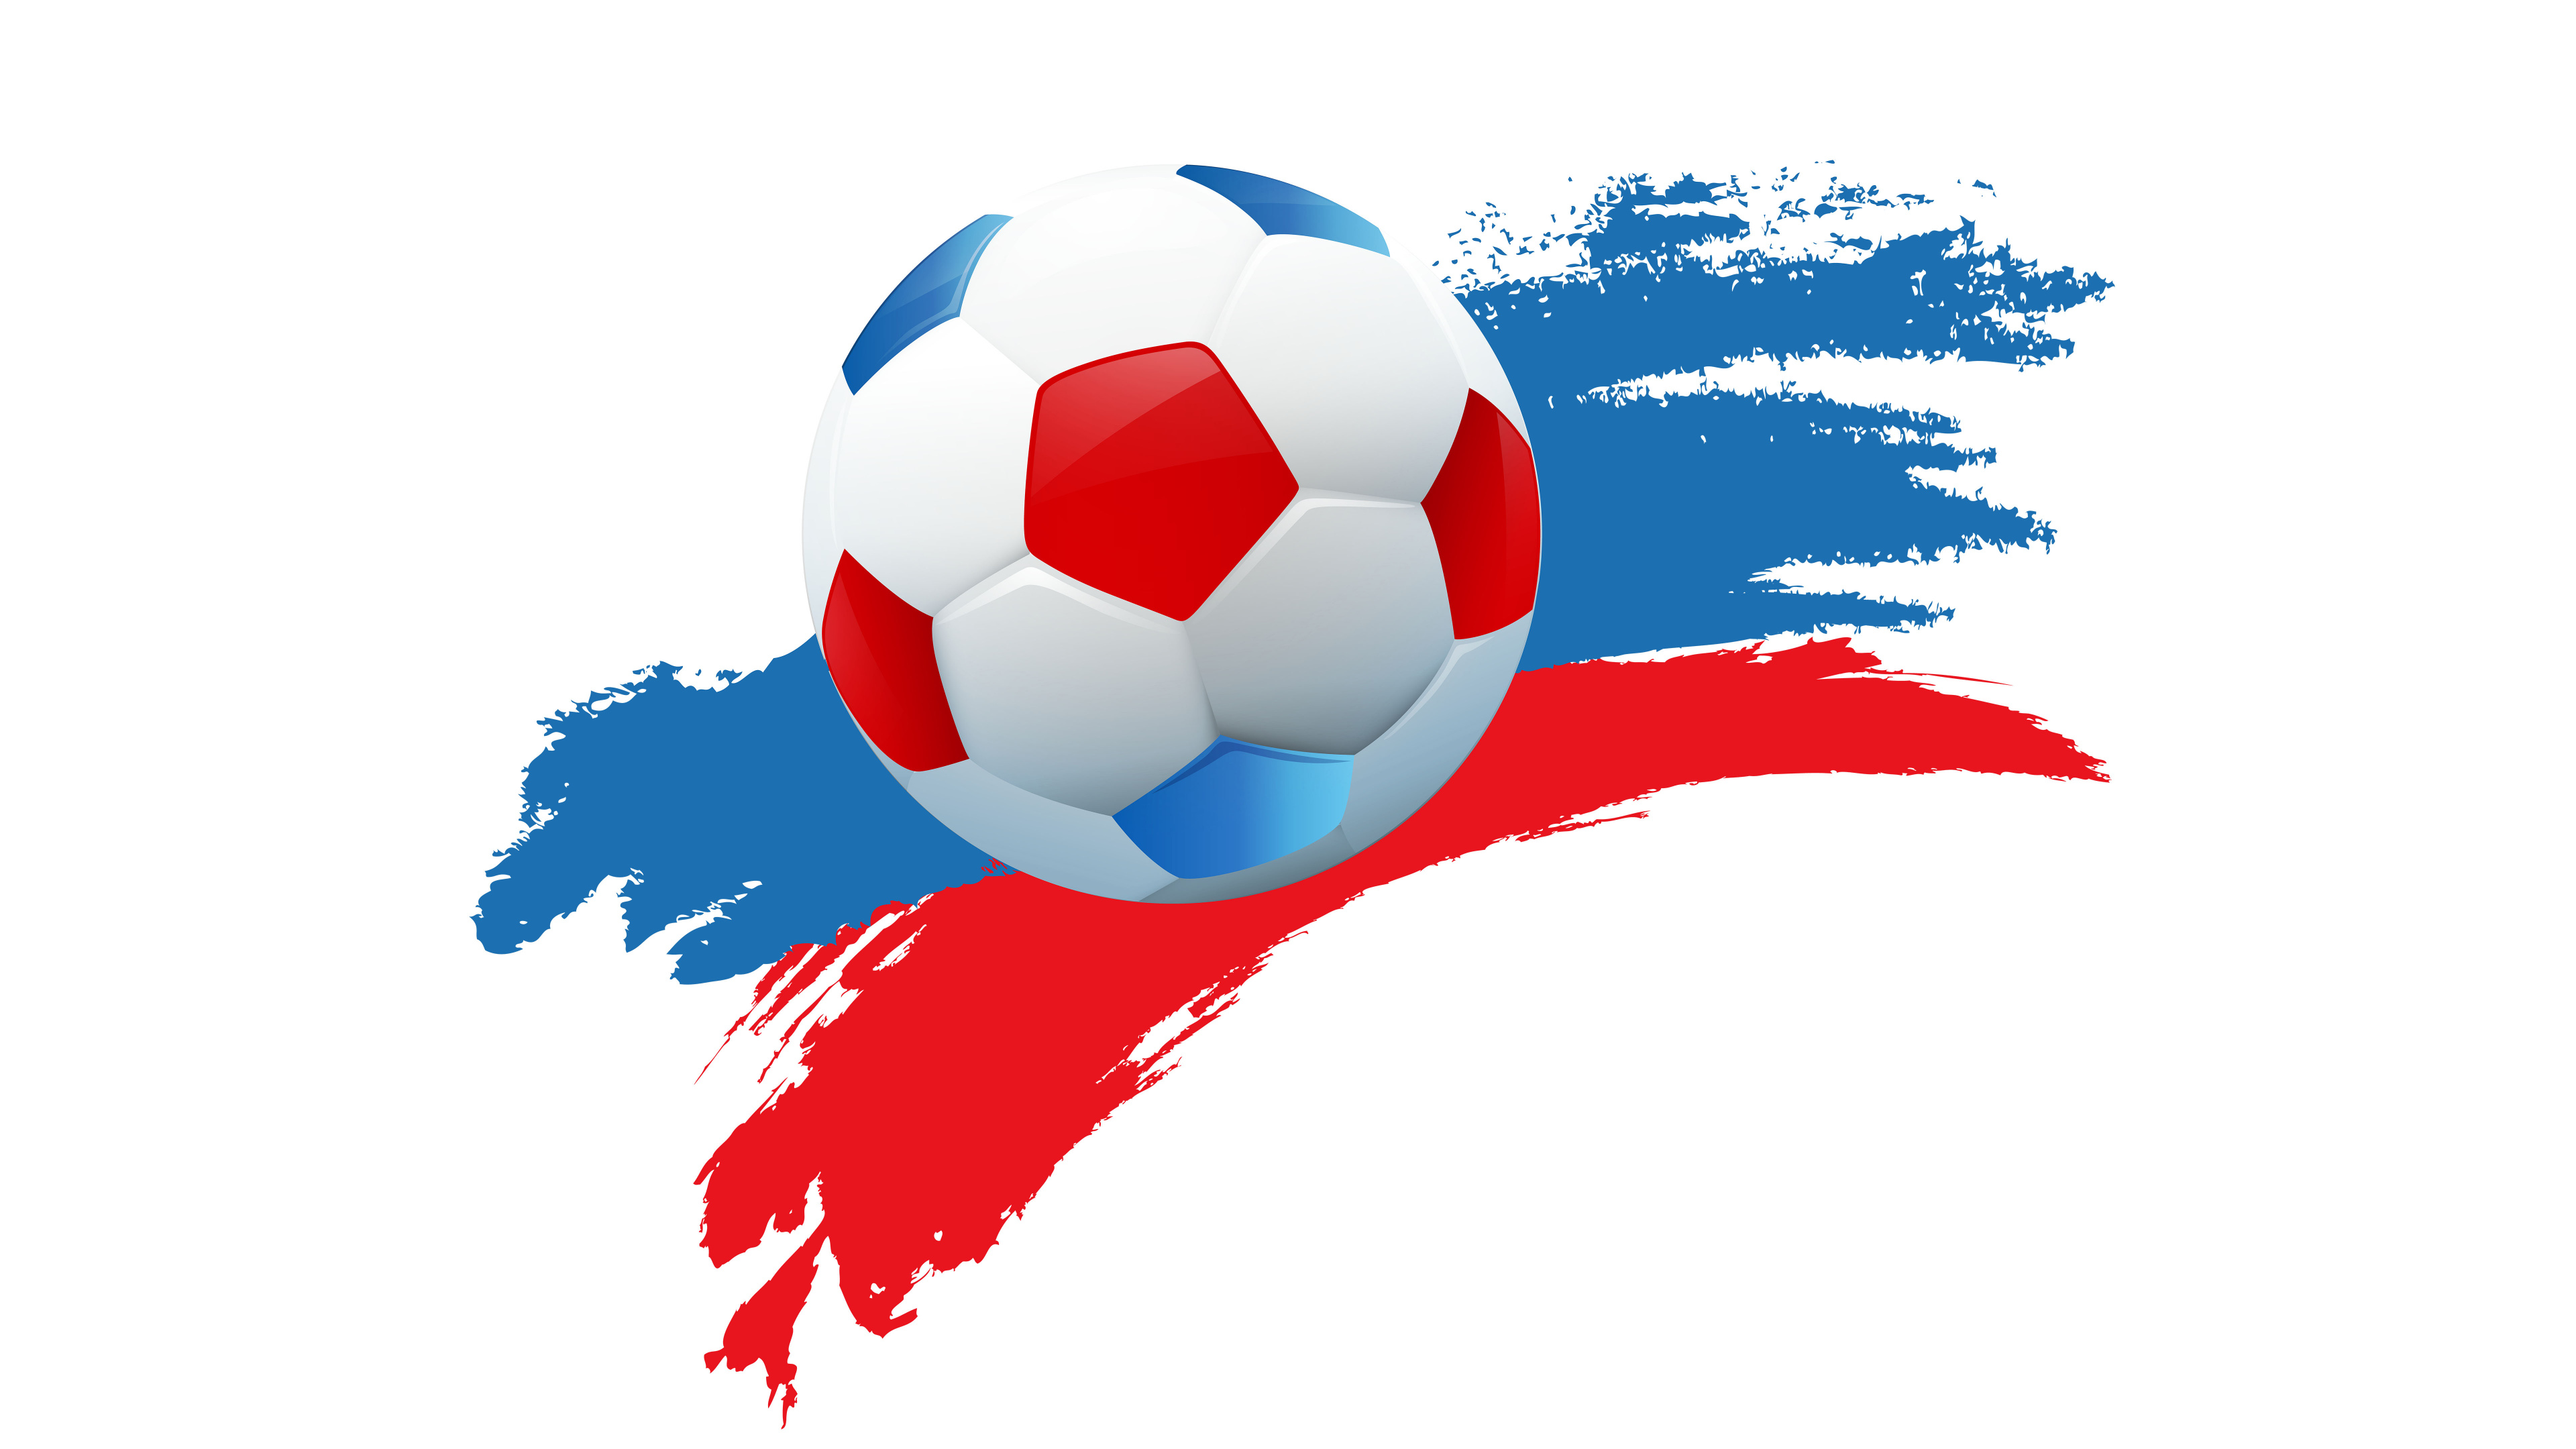 2018年世界杯, 球, 国际足联, 足球, 体育设备 壁纸 3840x2160 允许